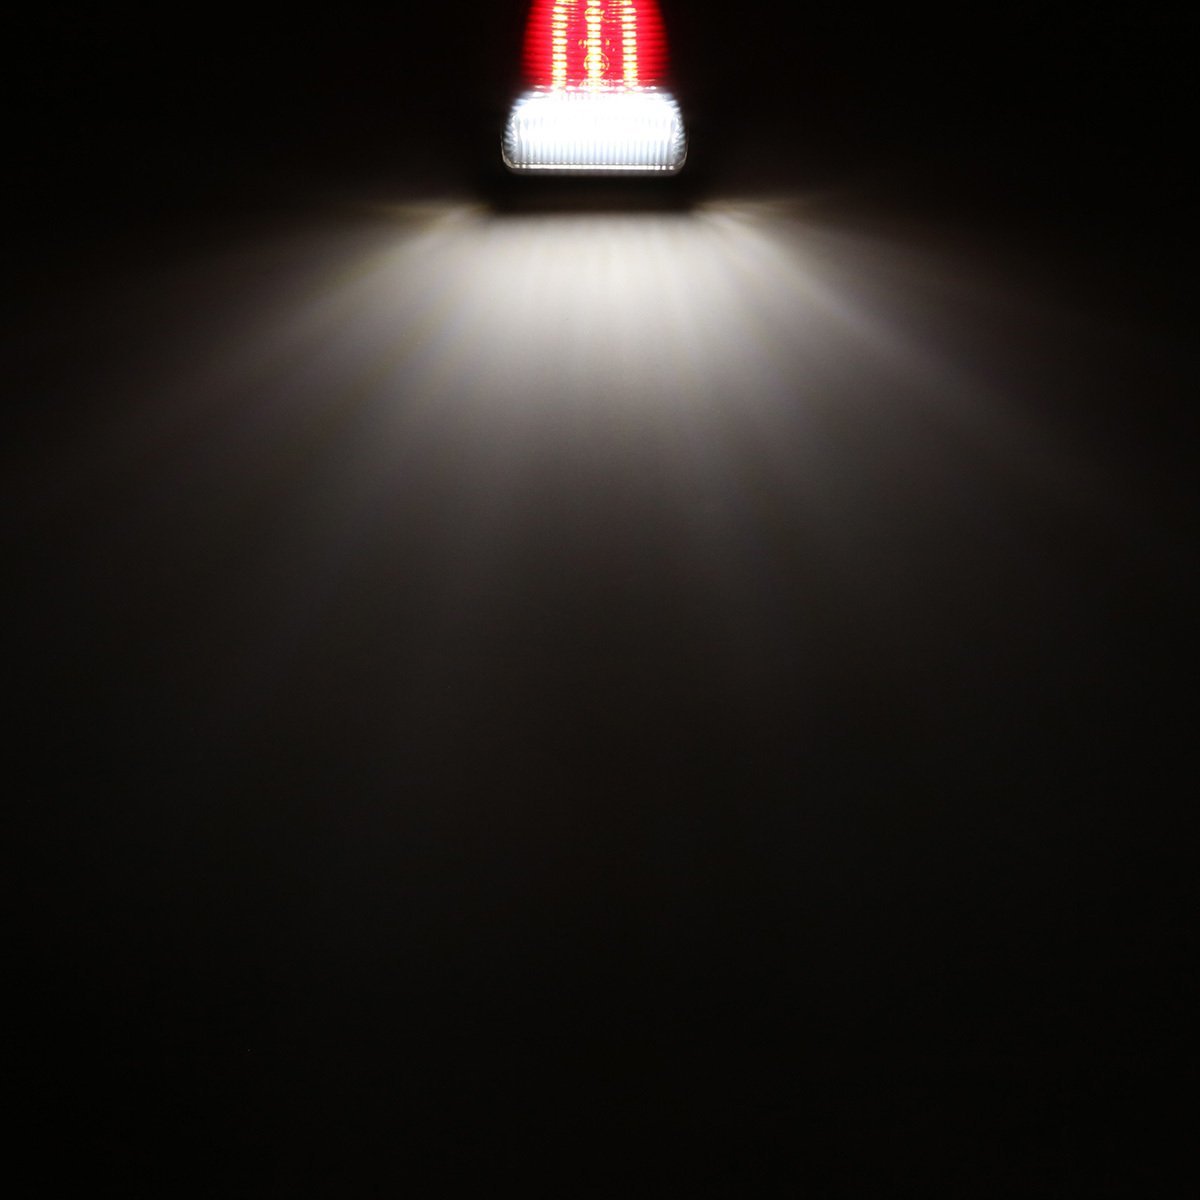 LED ライセンスランプ GMC シエラ ユーコン ナンバー灯 6500K ホワイト レッドマーカー付き RZ468_画像3